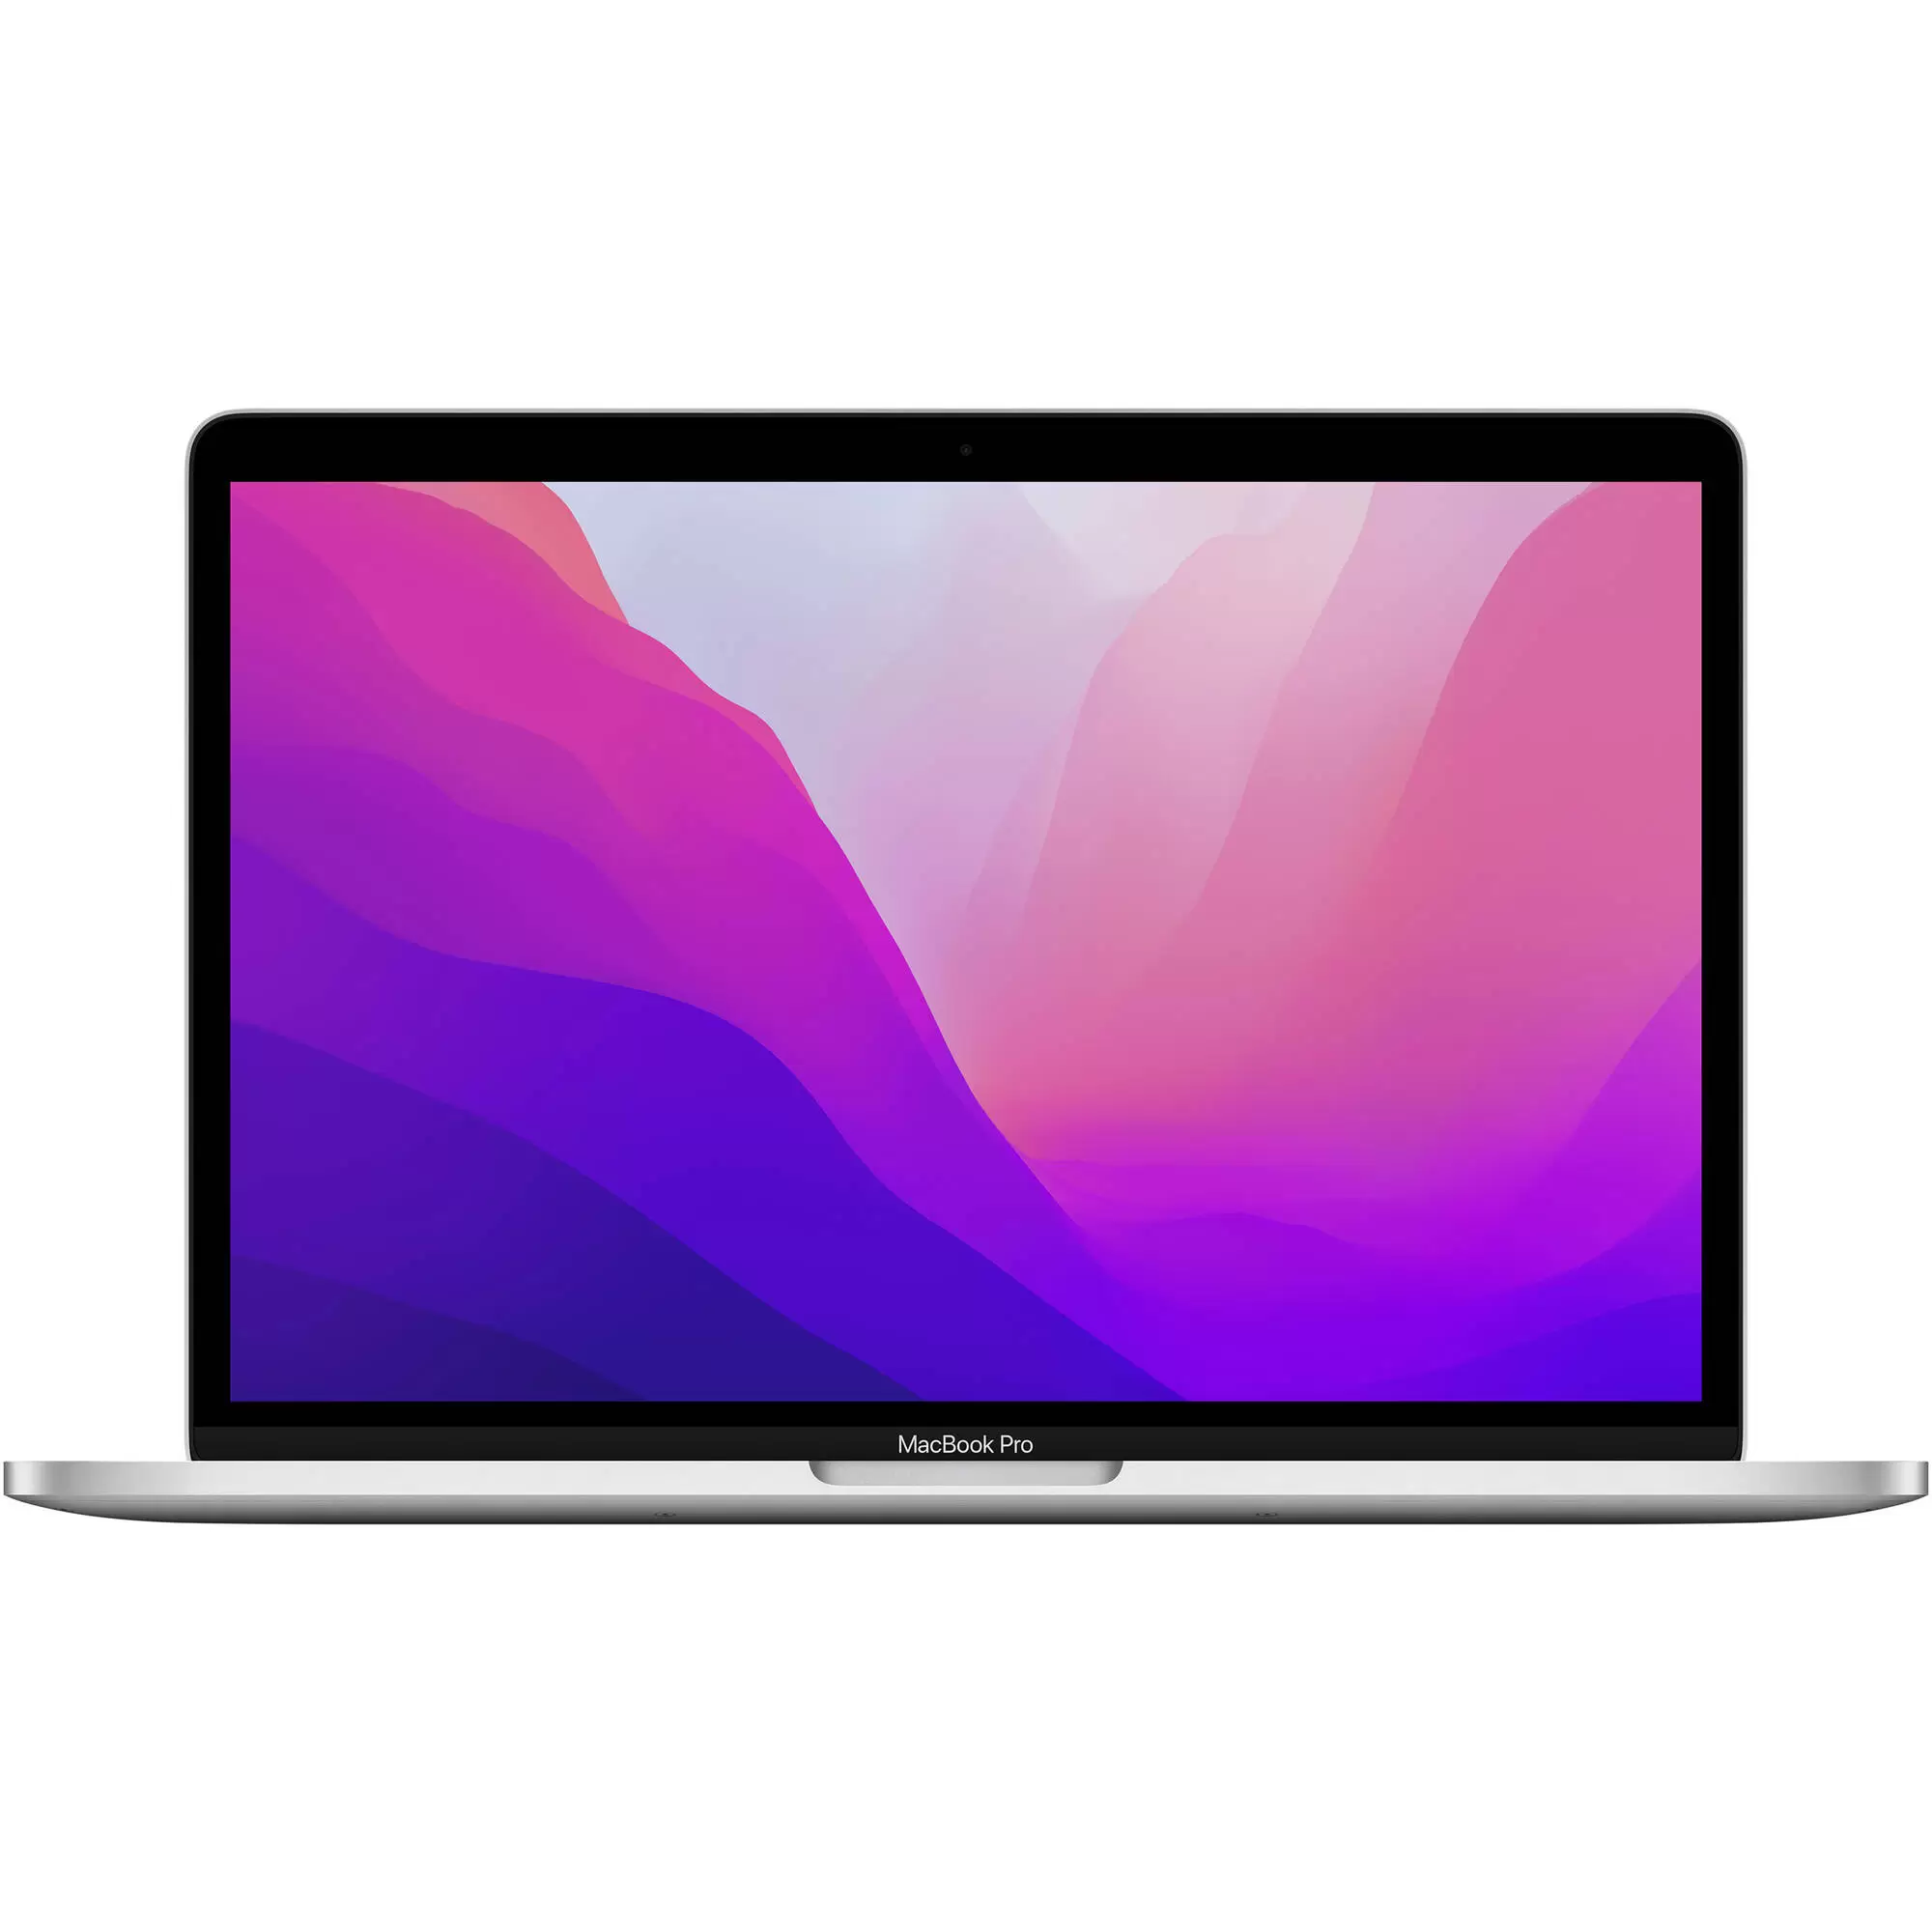 Apple MacBook Pro – myitstore.com.pk